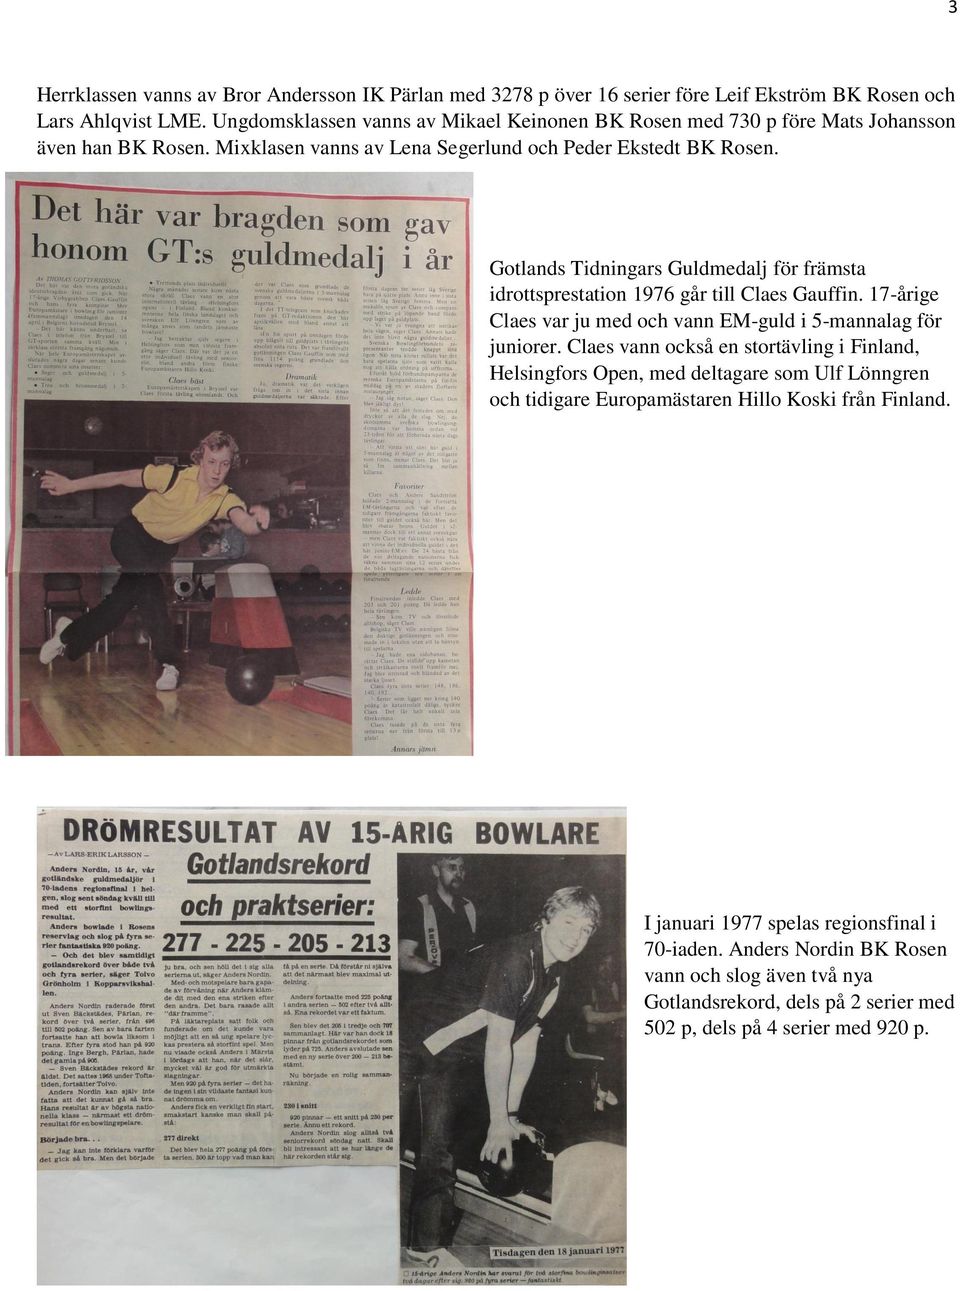 Gotlands Tidningars Guldmedalj för främsta idrottsprestation 1976 går till Claes Gauffin. 17-årige Claes var ju med och vann EM-guld i 5-mannalag för juniorer.